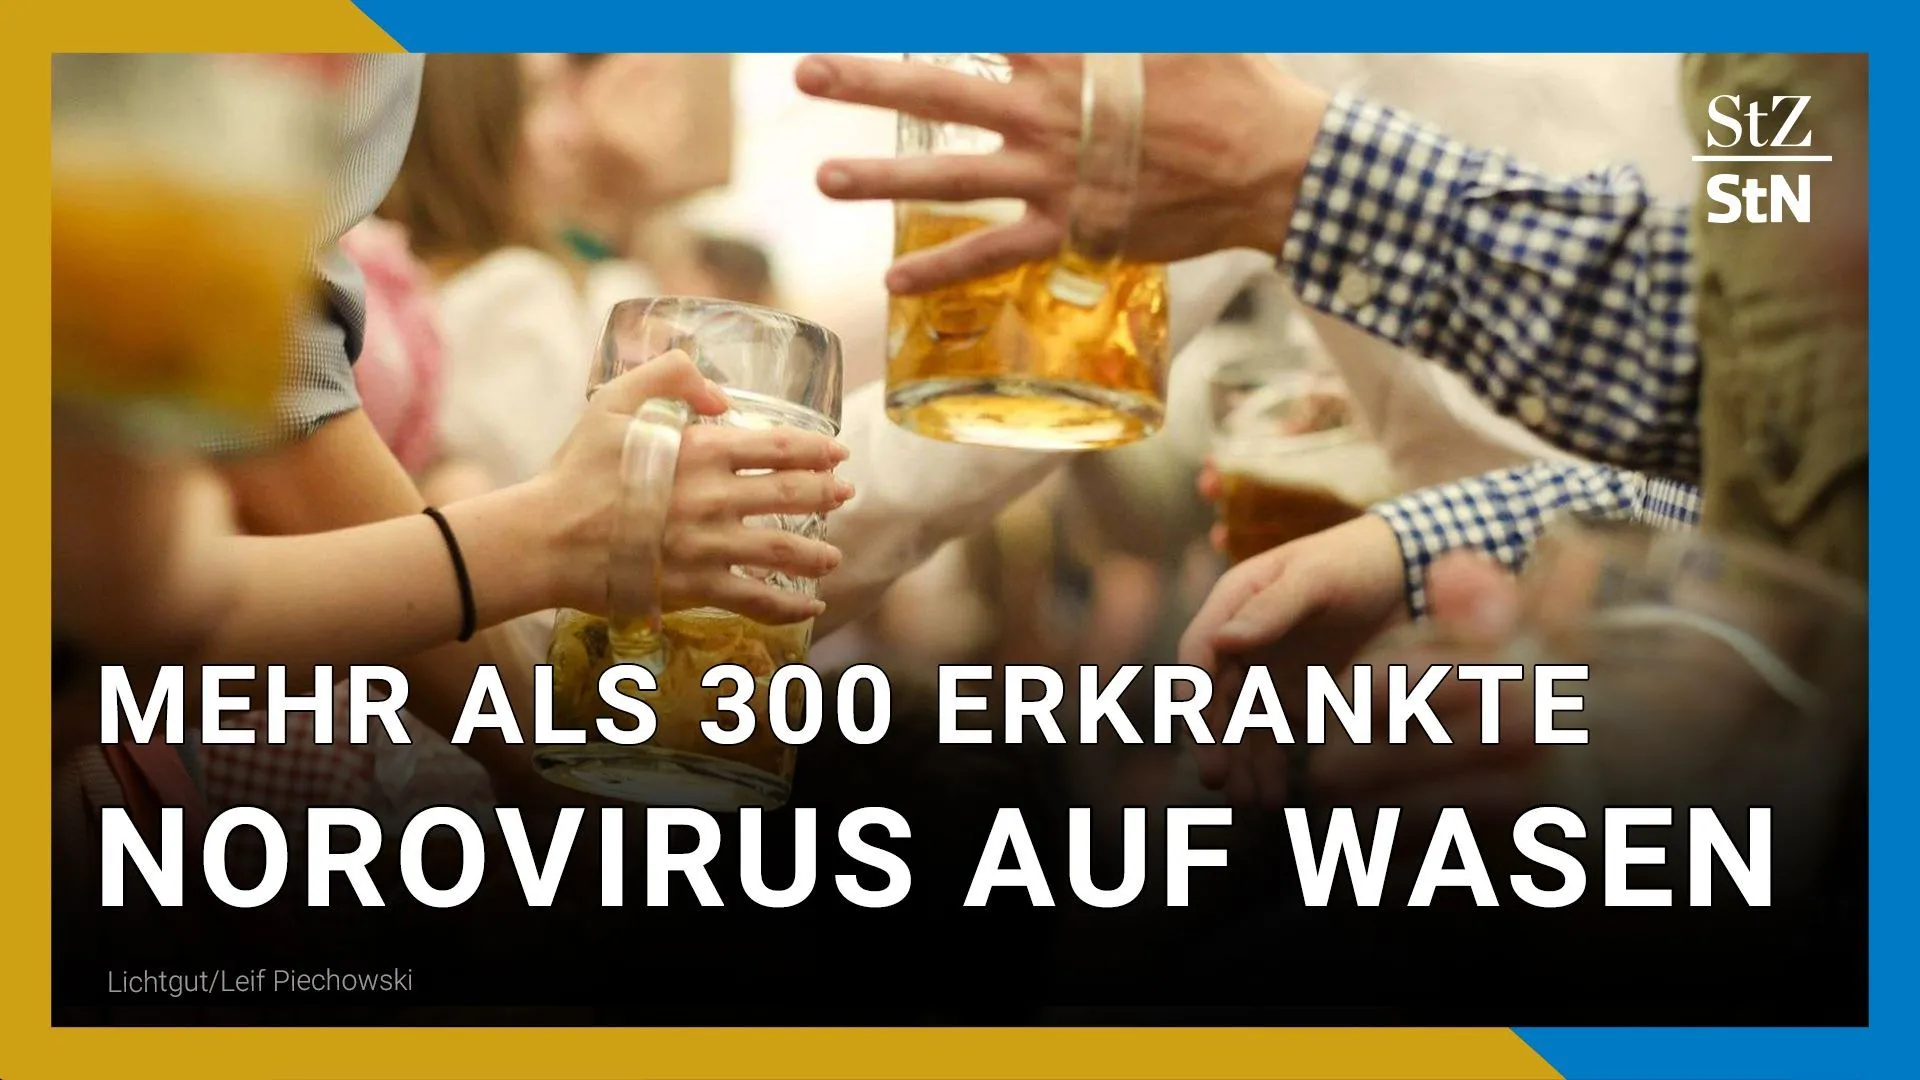 Norovirus a Wasen | Malattie di massa dopo la visita alla Festa di Primavera di Stoccarda